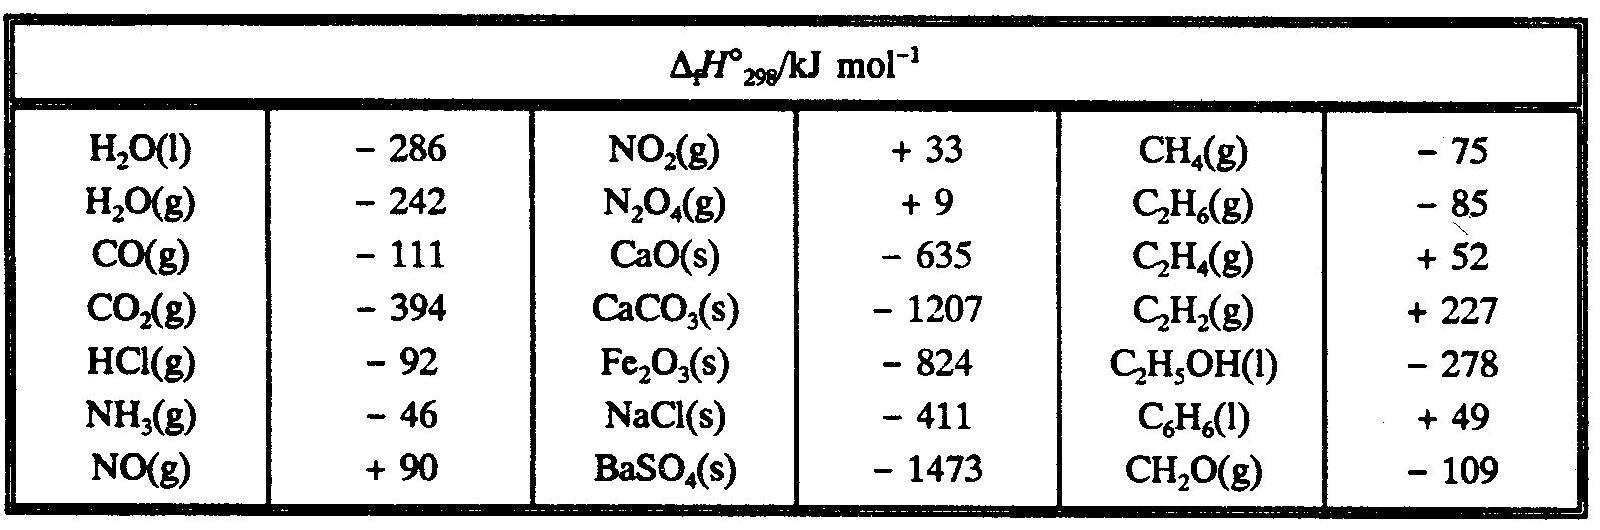 Теплота образования водорода кдж моль. Энтальпия образования co2. Энтальпии образования веществ таблица. Стандартная энтальпия co2. Энтальпия co2 таблица.